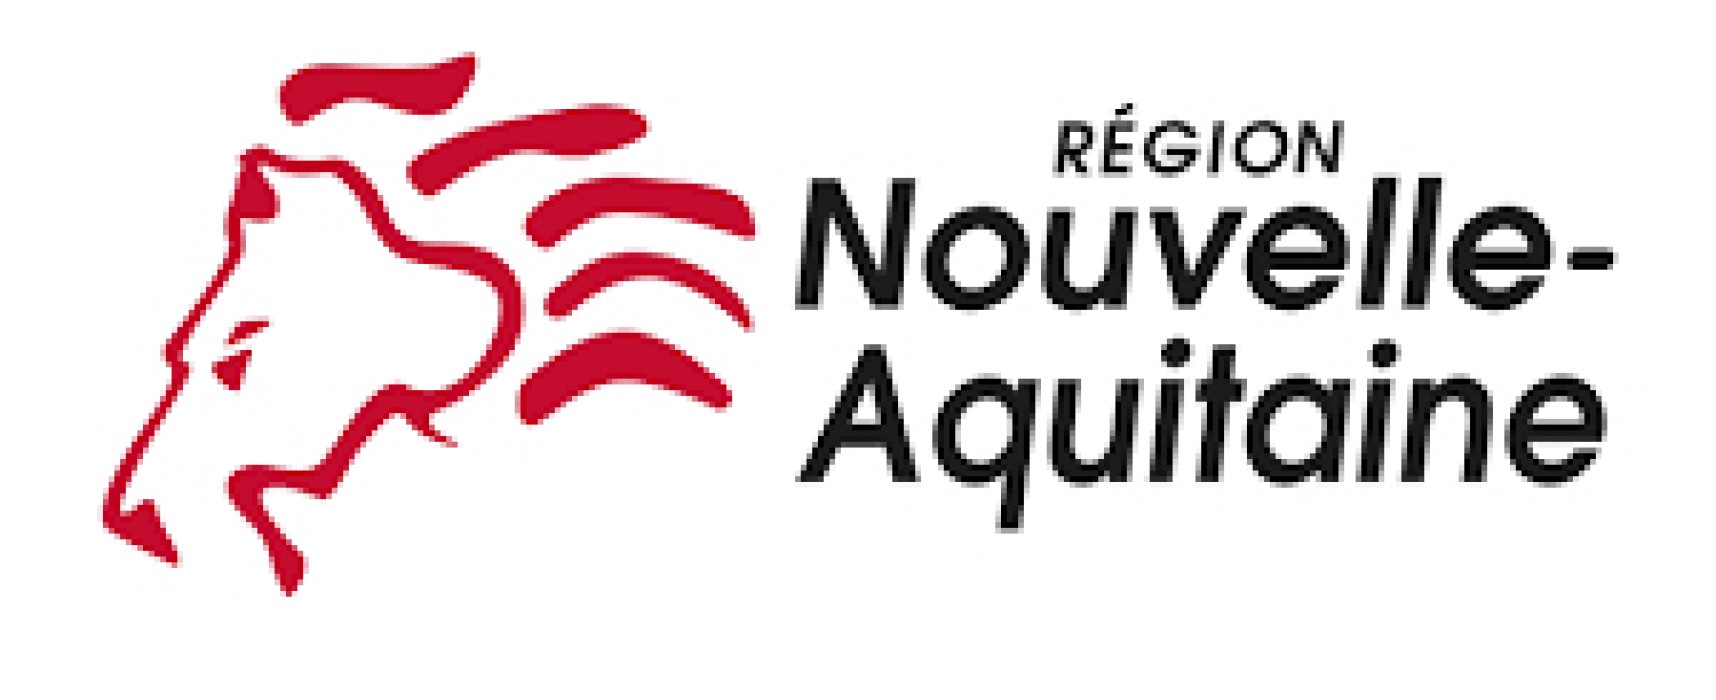 La Région Nouvelle-Aquitaine lance un appel à projets « Innovation rurale » pour favoriser l’innovation dans les territoires